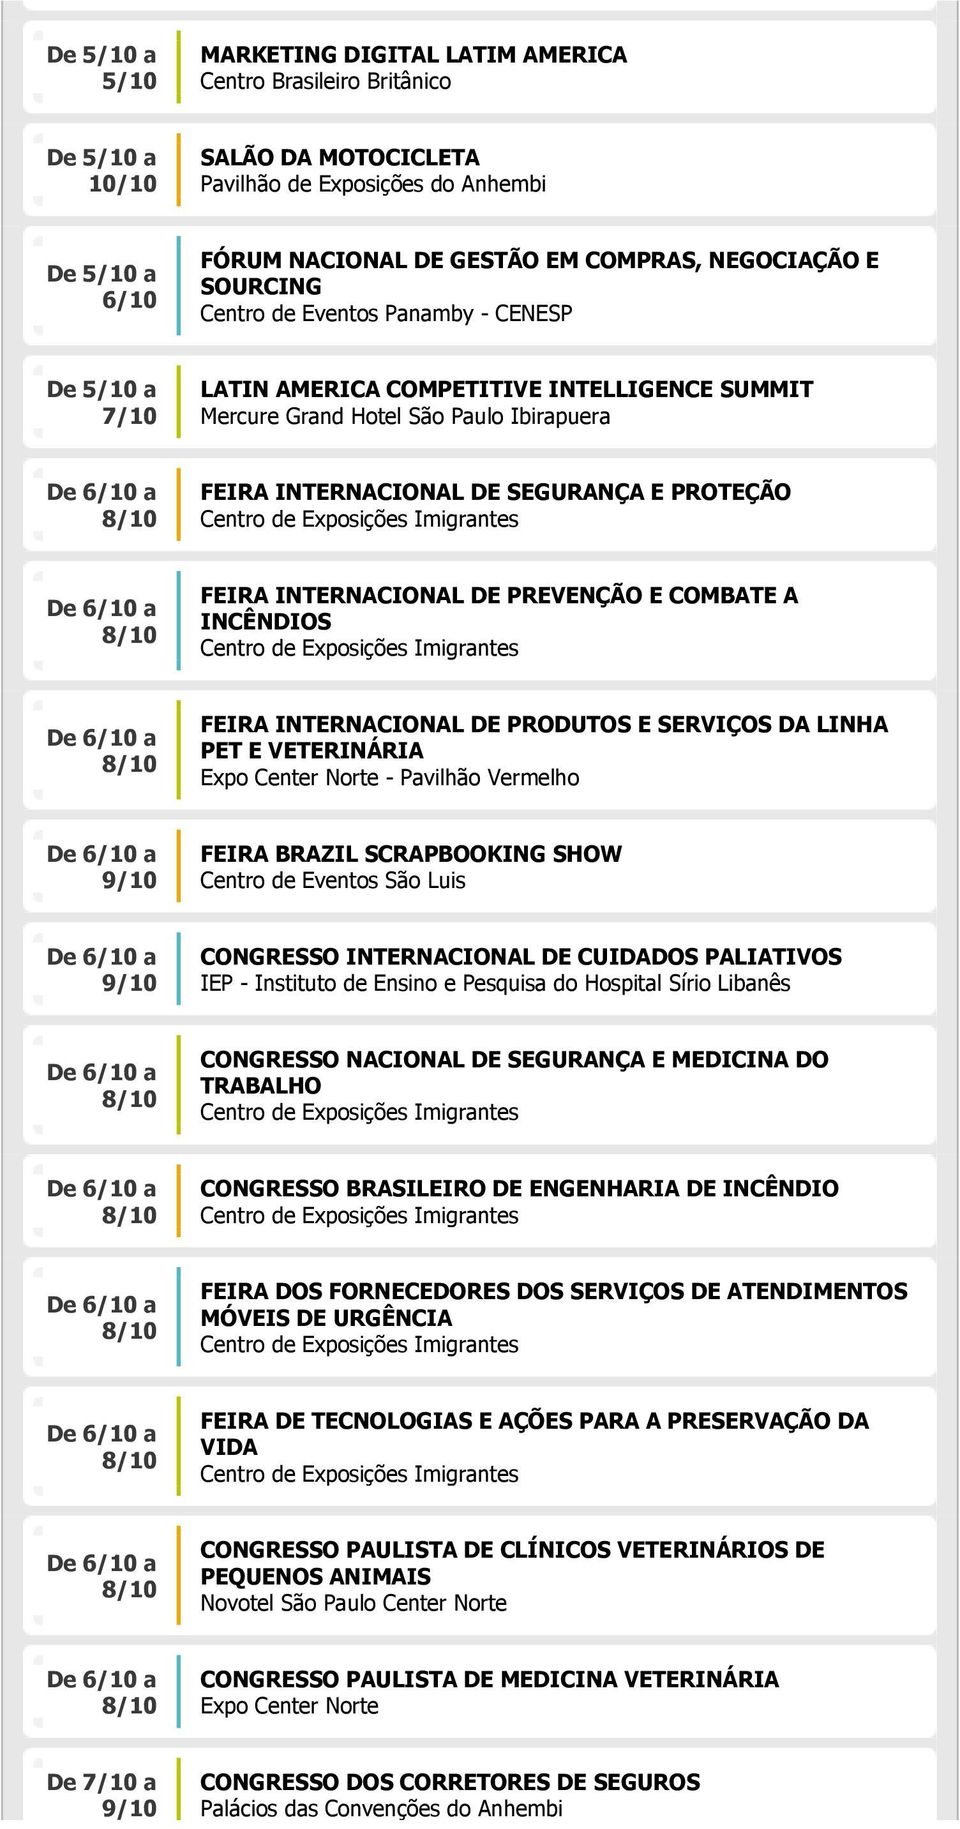 A INCÊNDIOS FEIRA INTERNACIONAL DE PRODUTOS E SERVIÇOS DA LINHA PET E VETERINÁRIA - Pavilhão Vermelho 9/10 FEIRA BRAZIL SCRAPBOOKING SHOW Centro de Eventos São Luis 9/10 CONGRESSO INTERNACIONAL DE